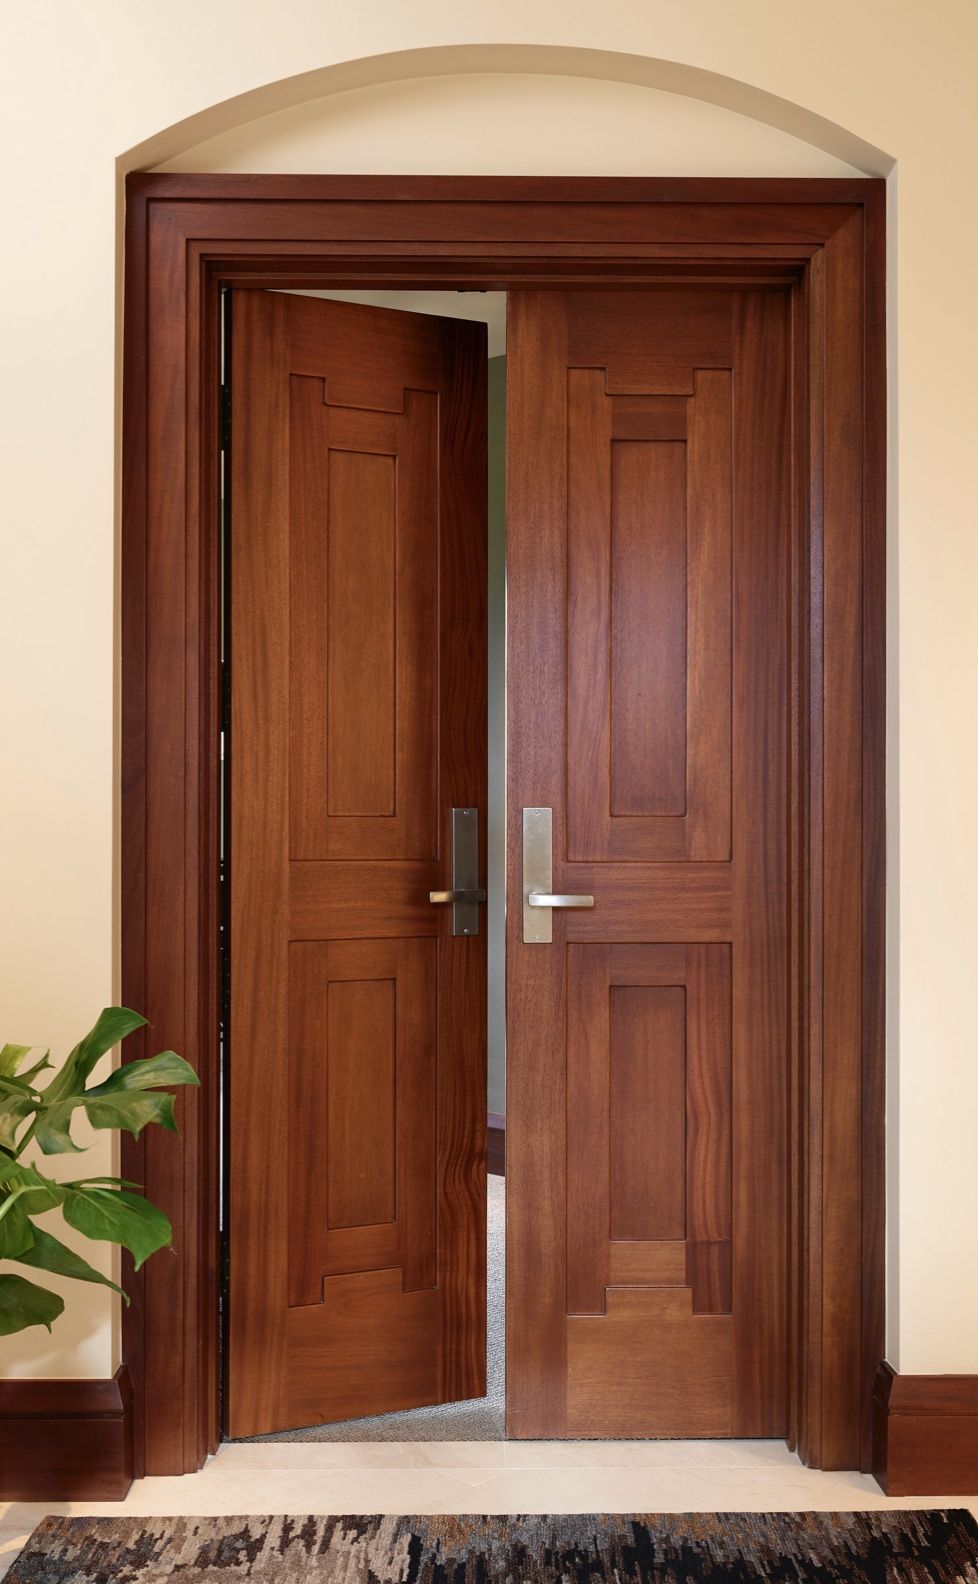 How to Clean Wooden Doors